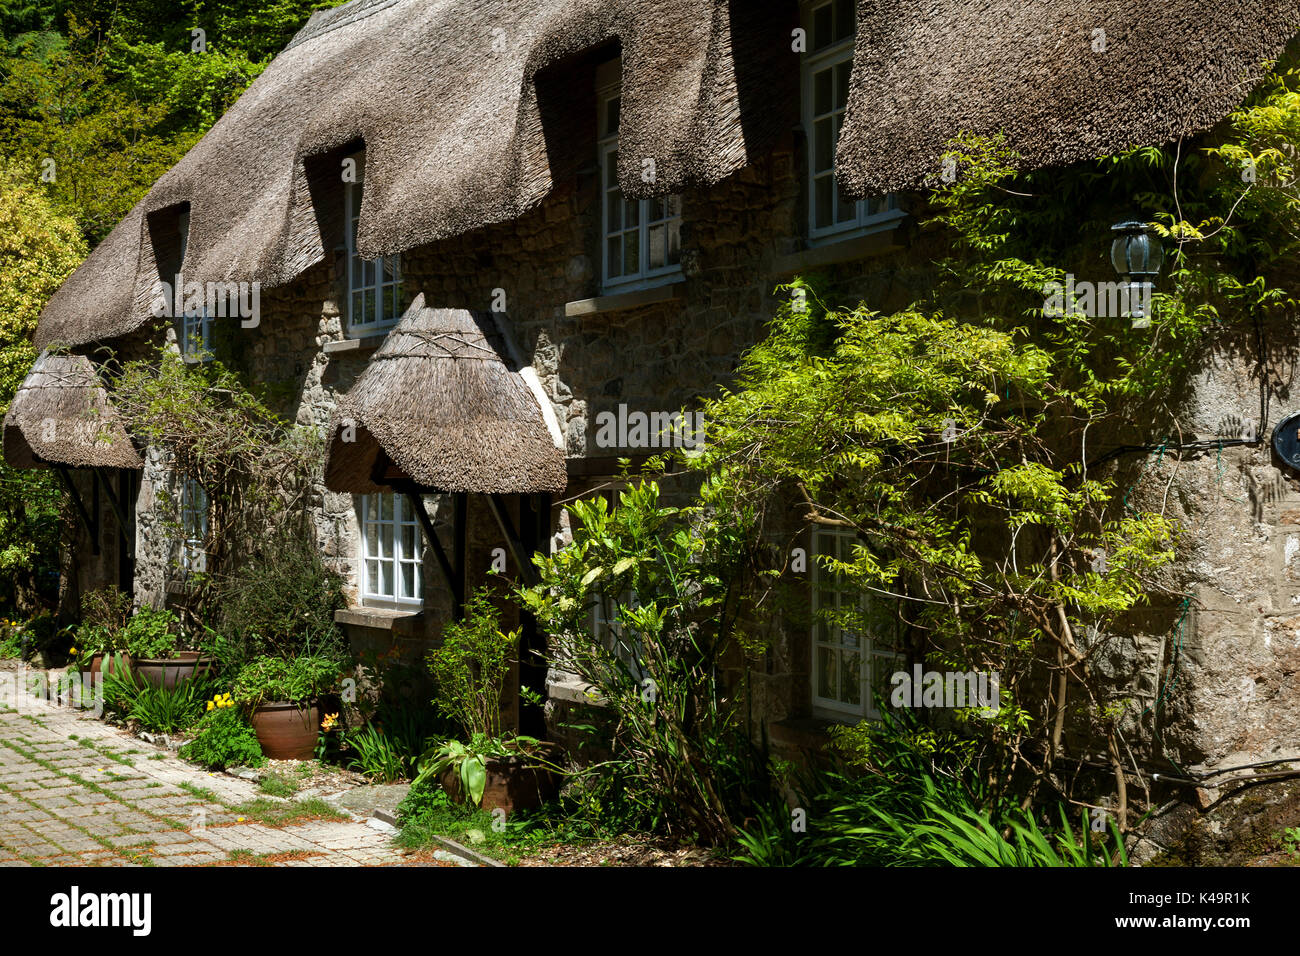 Typical House In Dartmoor, Buckland In The Moor, Dartmoor National Park, Devon, England Stock Photo